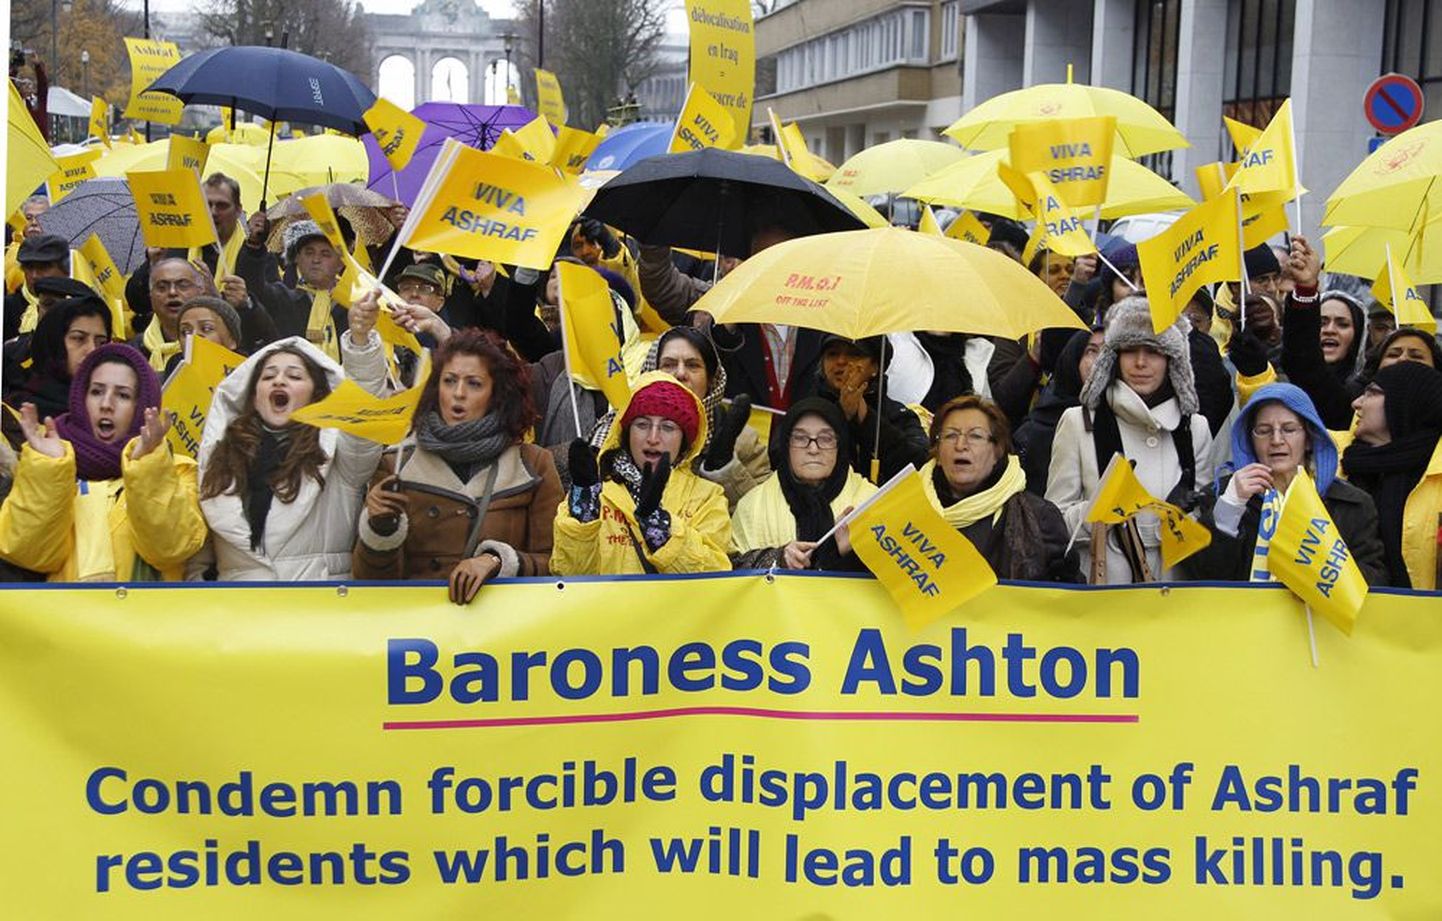 Iraani pagulased protesteerisid 1. detsembril Brüsselis Ashrafi laagri kavandatava sulgemise vastu. Nad kutsuvad Euroopa Liidu välispoliitika juhti paruness Catherine Ashtonit üles mõistma hukka mitme tuhande
ashraflasest pagulase kavandatava ümberasustamise, mis võib protestijate hinnangul viia massimõrvani.